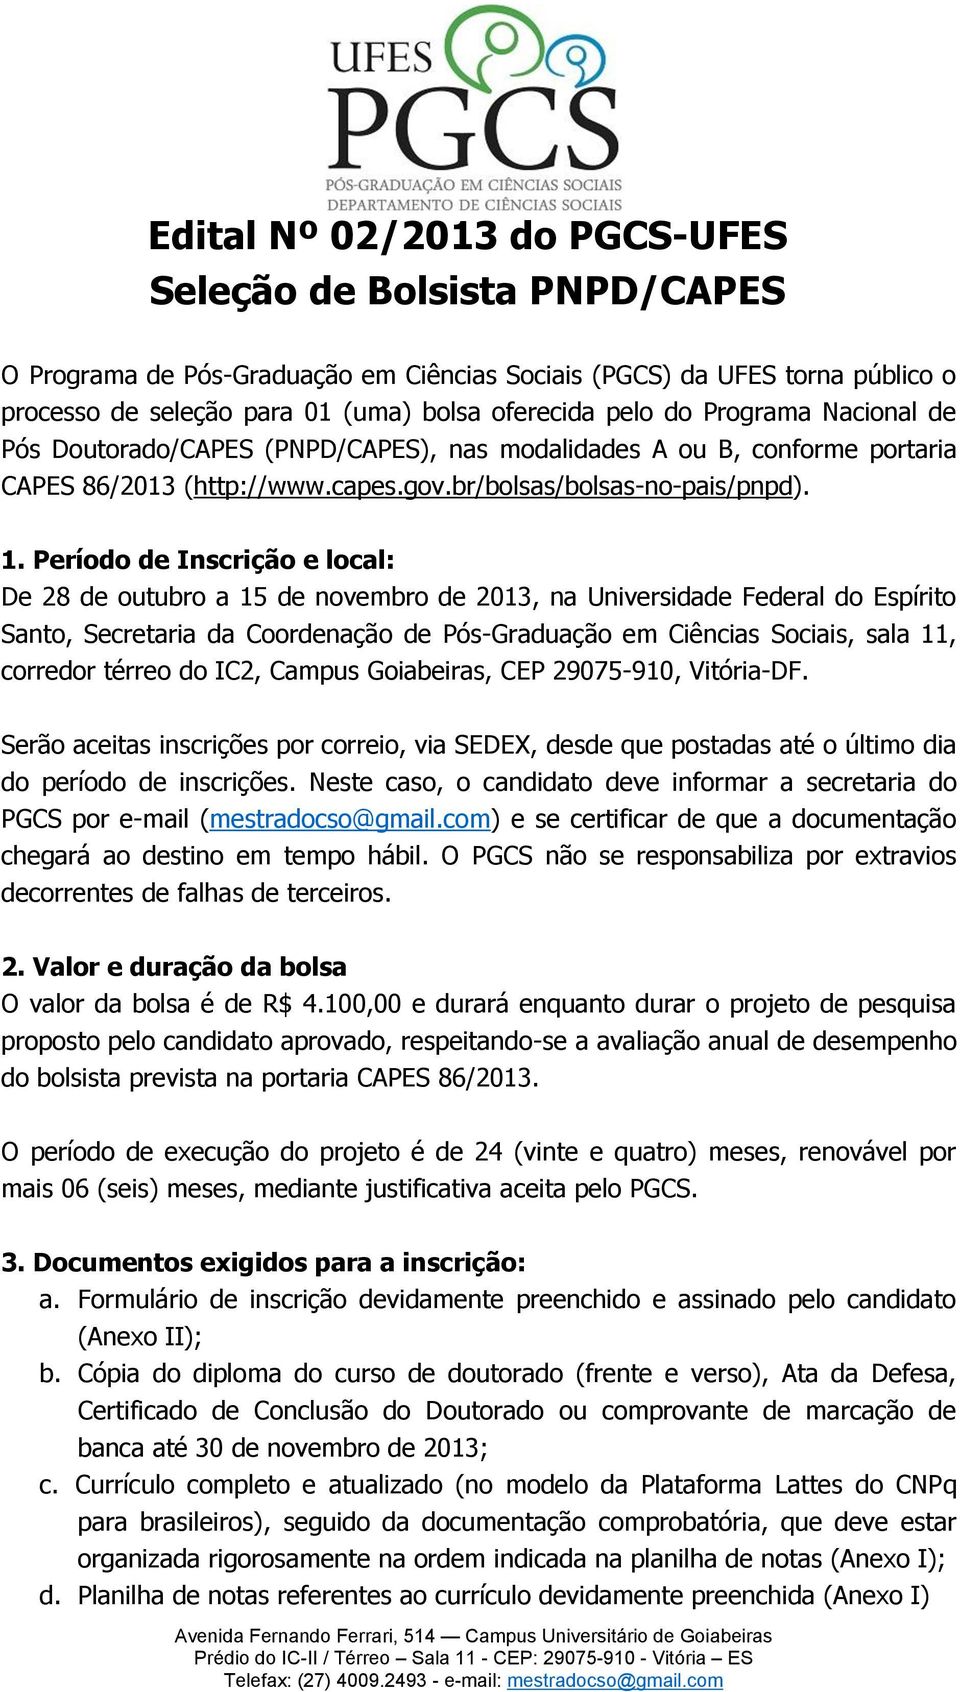 Período de Inscrição e local: De 28 de outubro a 15 de novembro de 2013, na Universidade Federal do Espírito Santo, Secretaria da Coordenação de Pós-Graduação em Ciências Sociais, sala 11, corredor